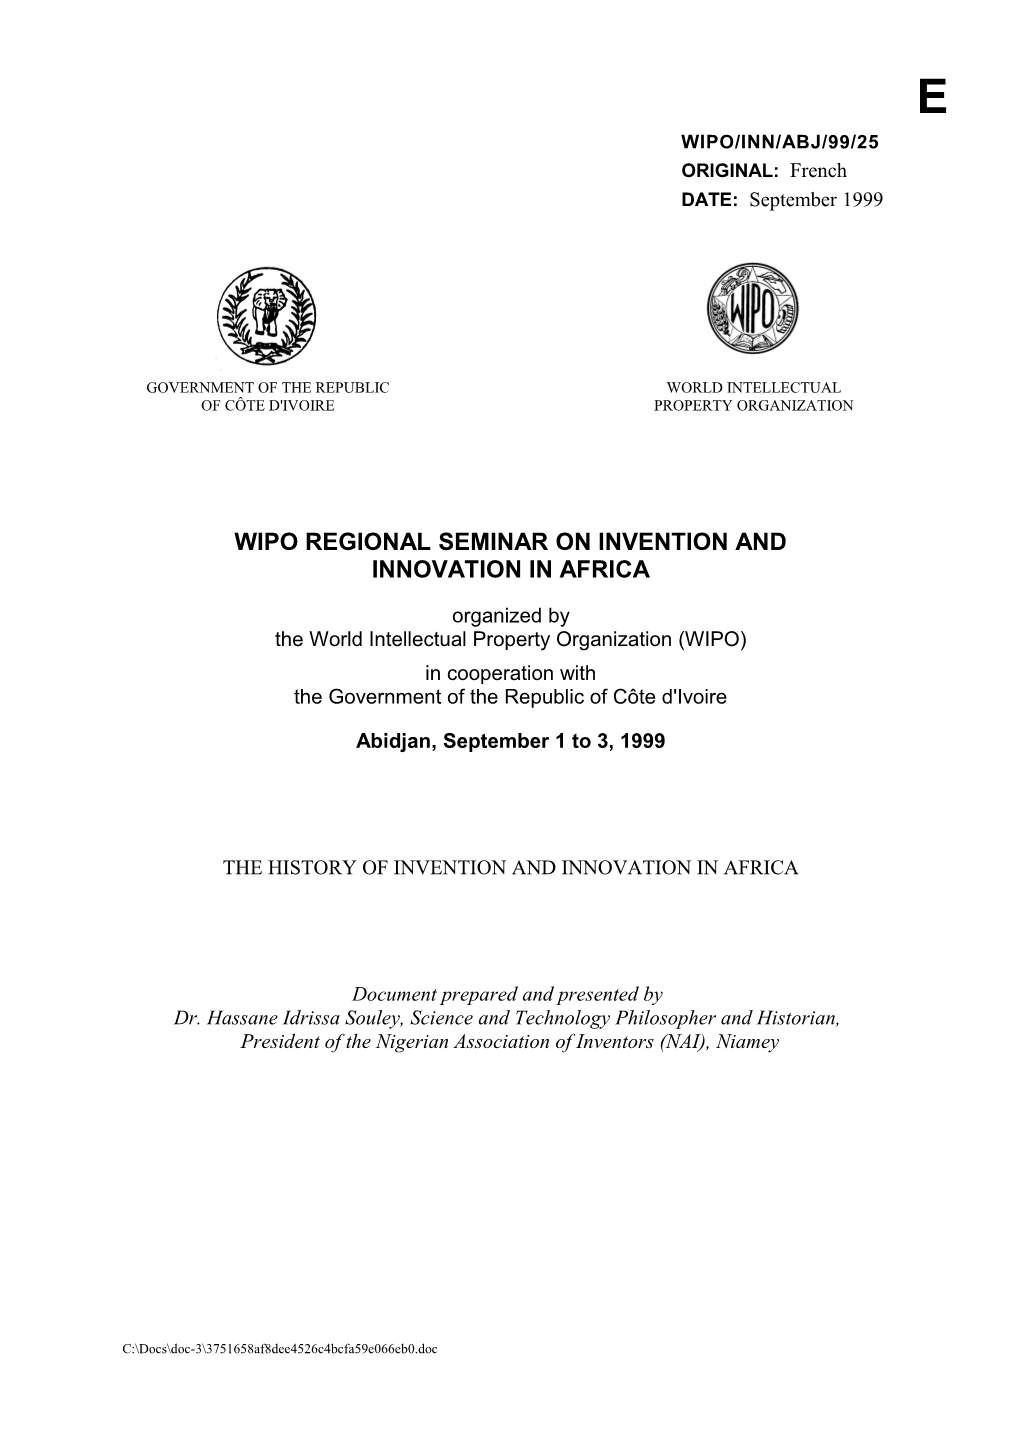 WIPO/INN/ABJ/99/25: L'histoire De L'invention Et De L'innovation En Afrique